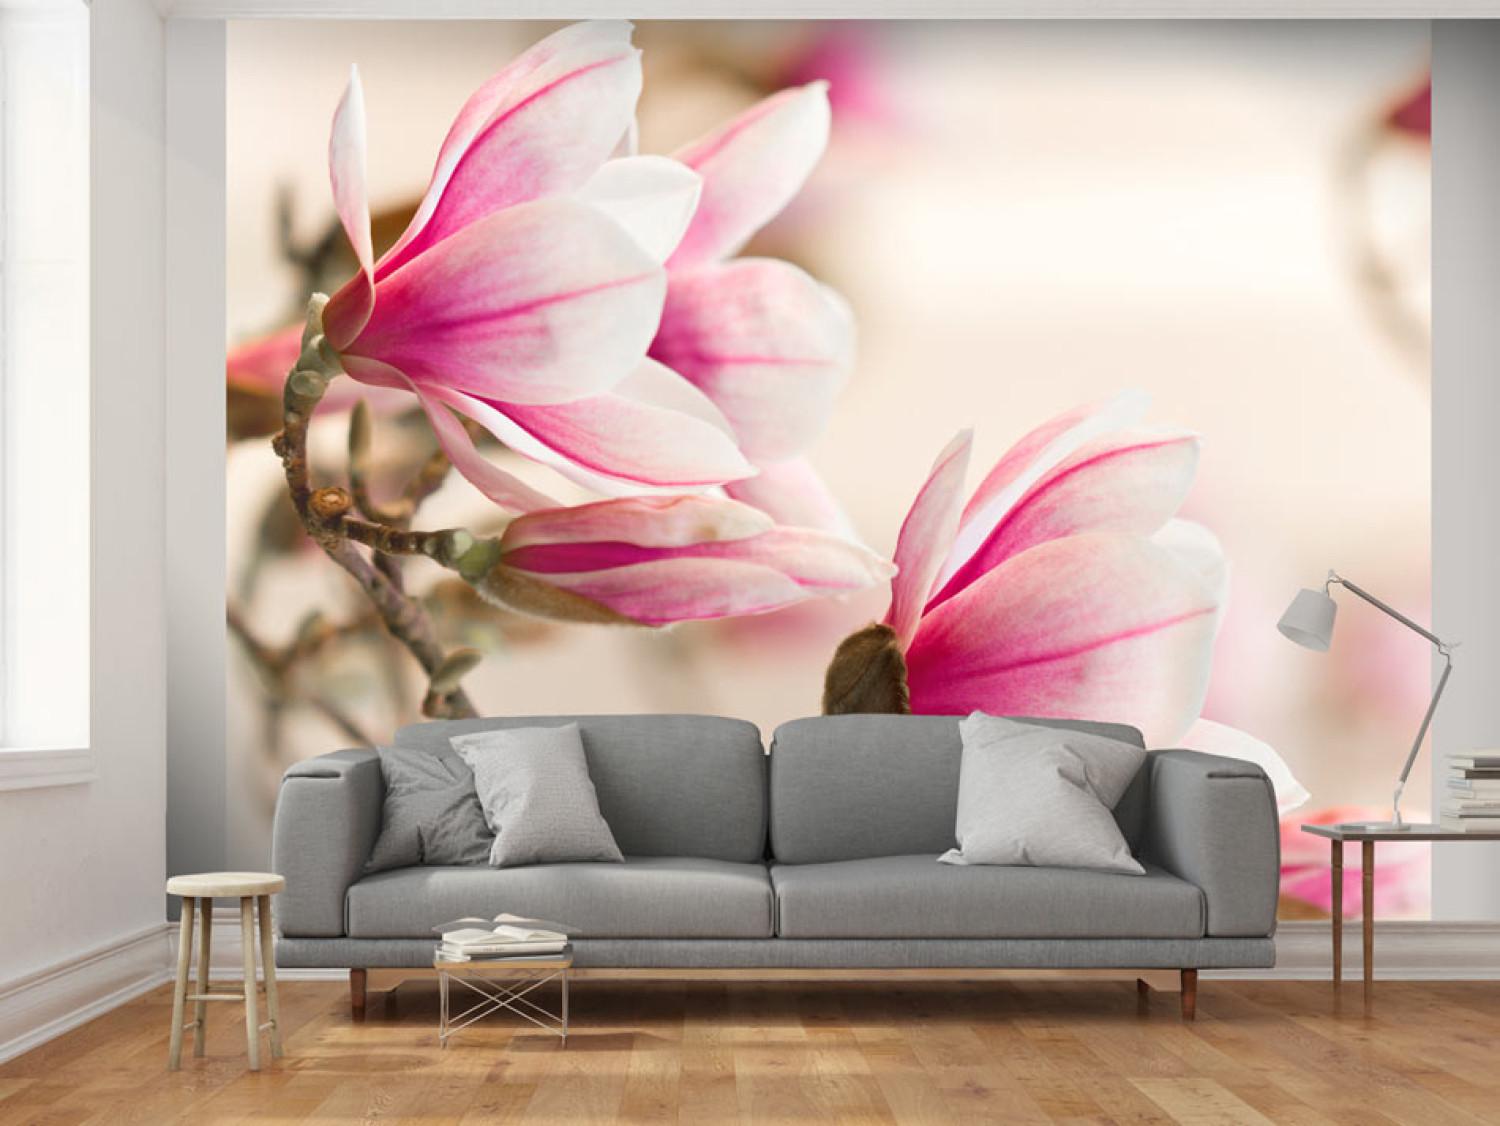 Fotomural a medida Flores de magnolia - motivo floral en fondo claro y delicado